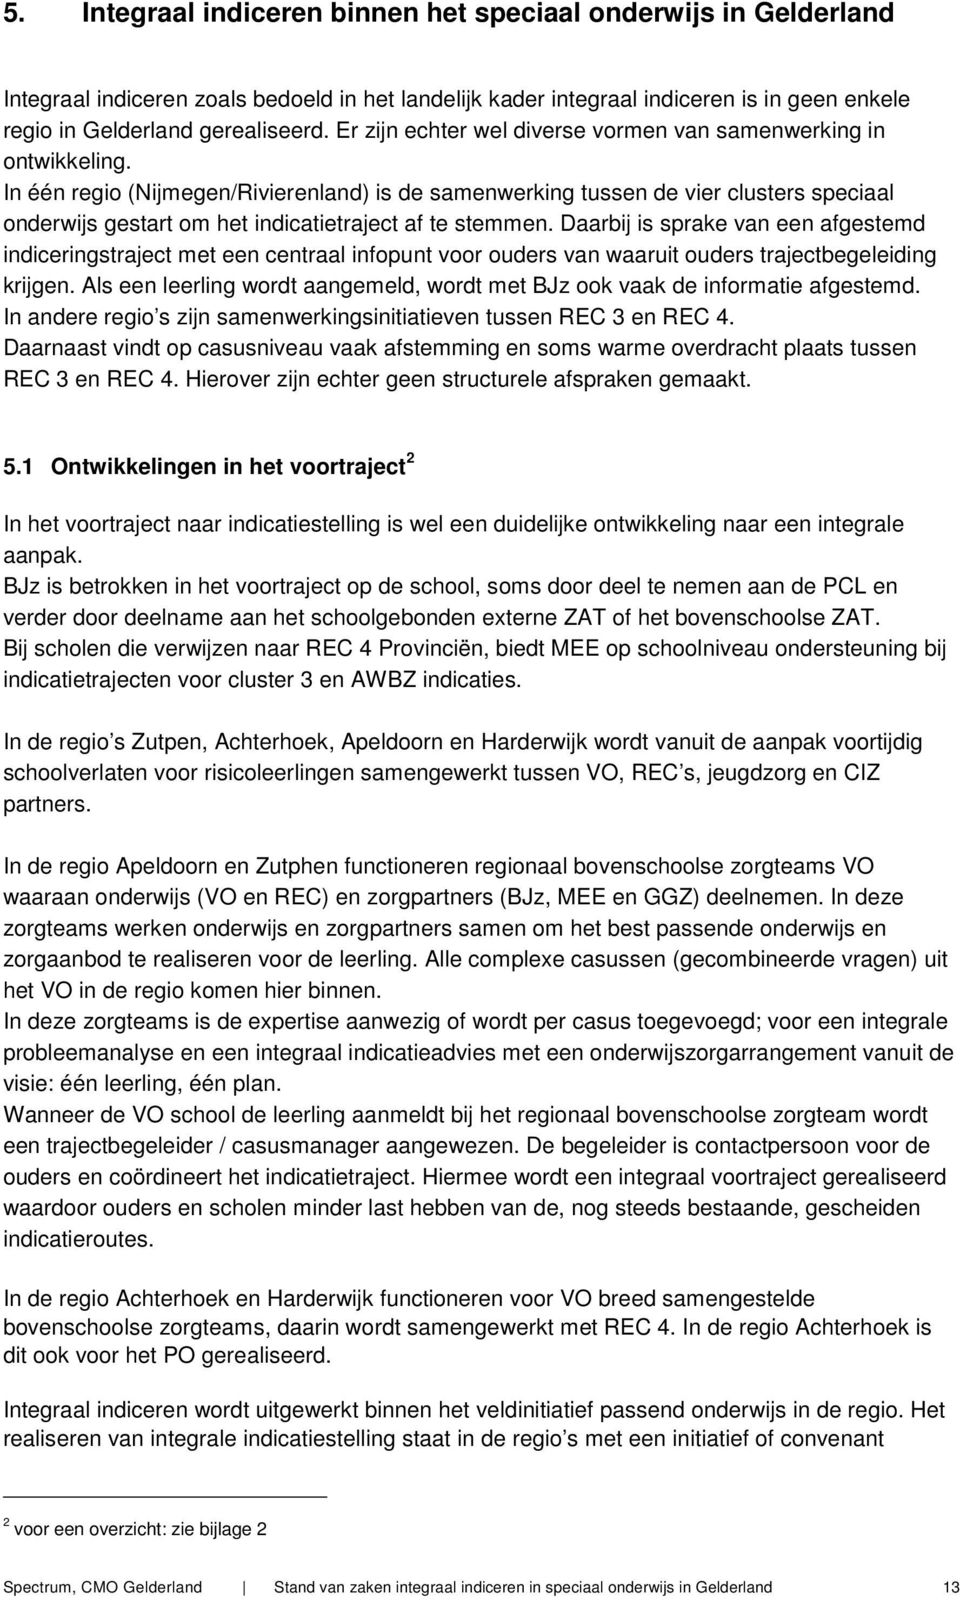 In één regio (Nijmegen/Rivierenland) is de samenwerking tussen de vier clusters speciaal onderwijs gestart om het indicatietraject af te stemmen.